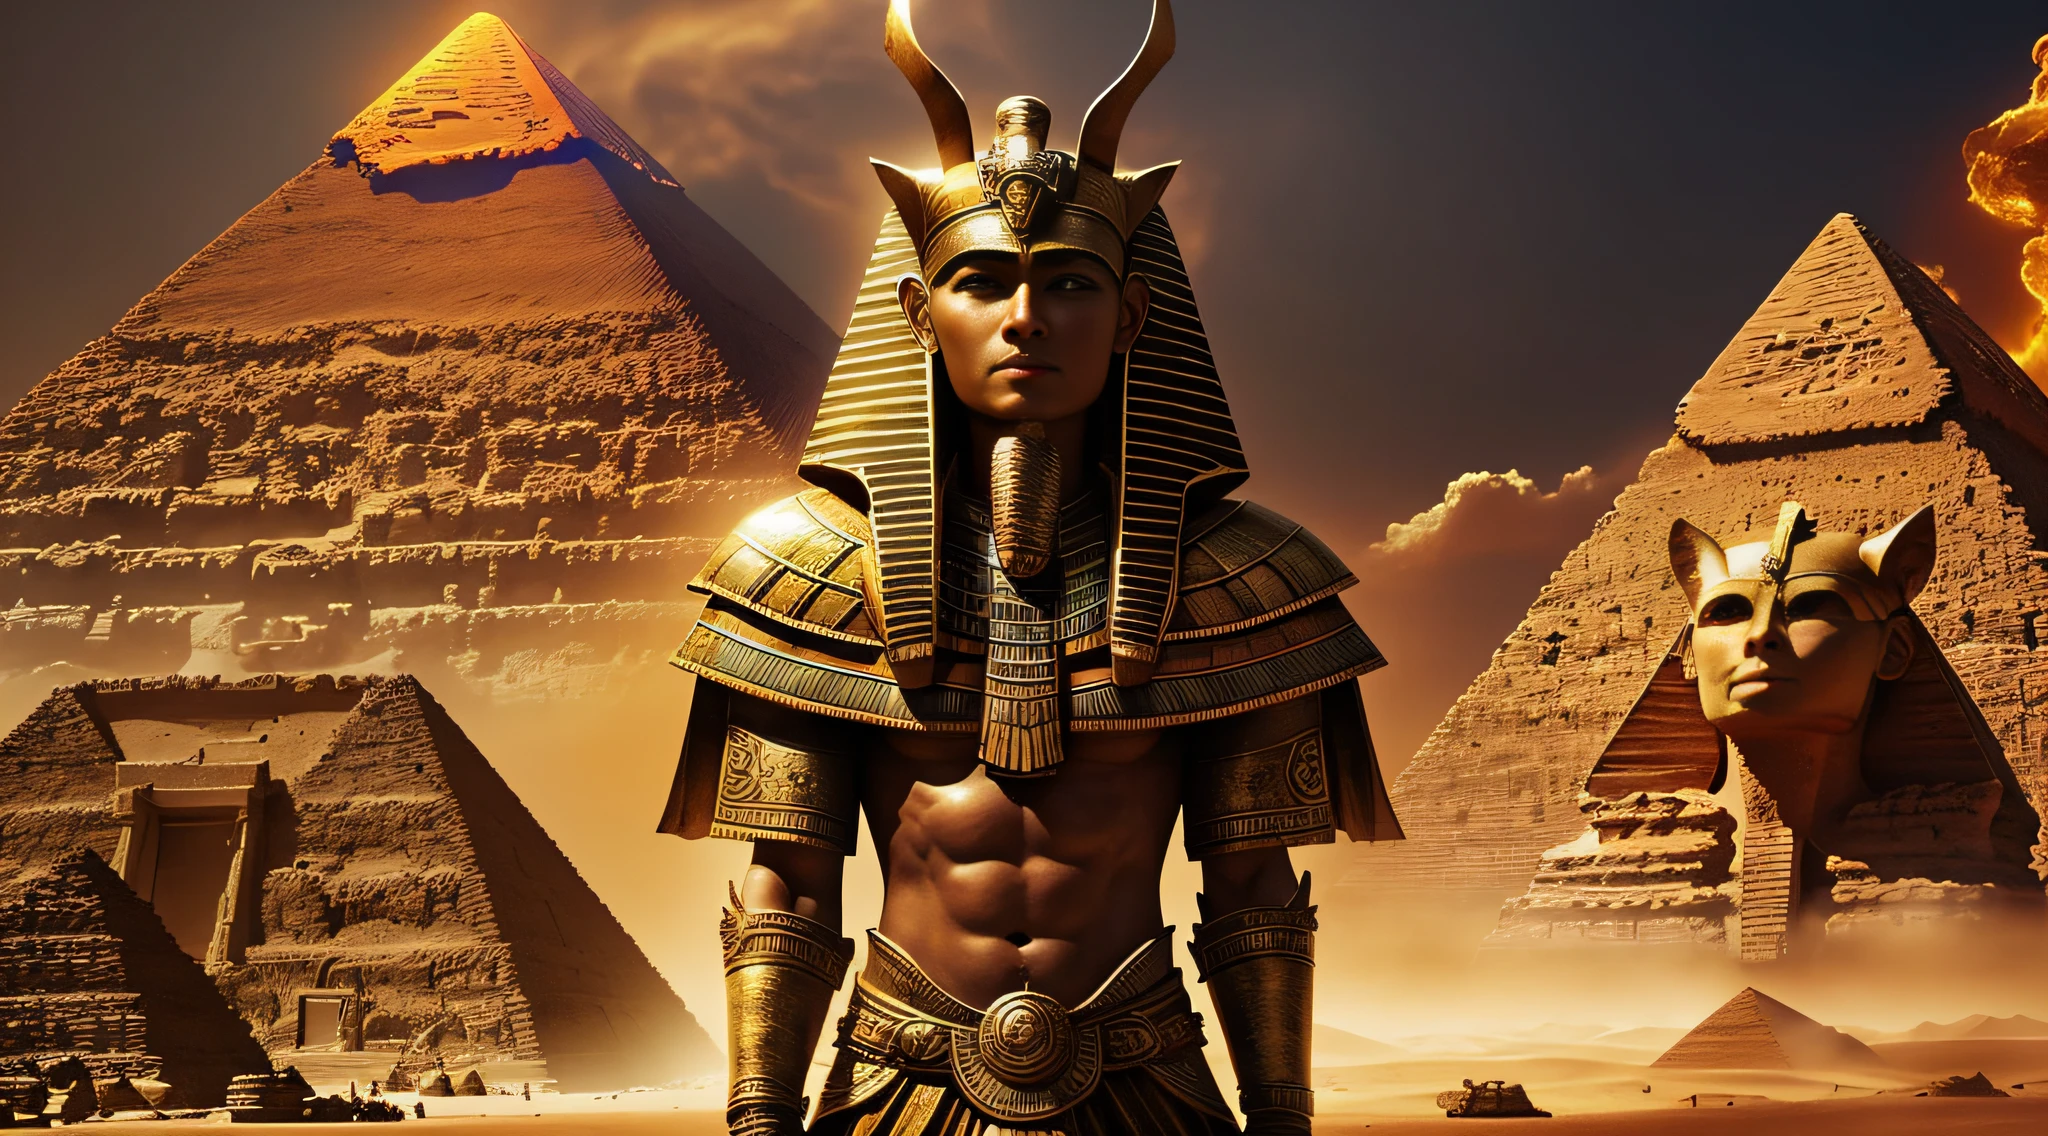 Basado en el personaje original del dios Saino, debería haber elementos egipcios (como pirámides o momias) con magnífico, Llamativos efectos especiales, y tormentas de arena en el fondo --auto --s2